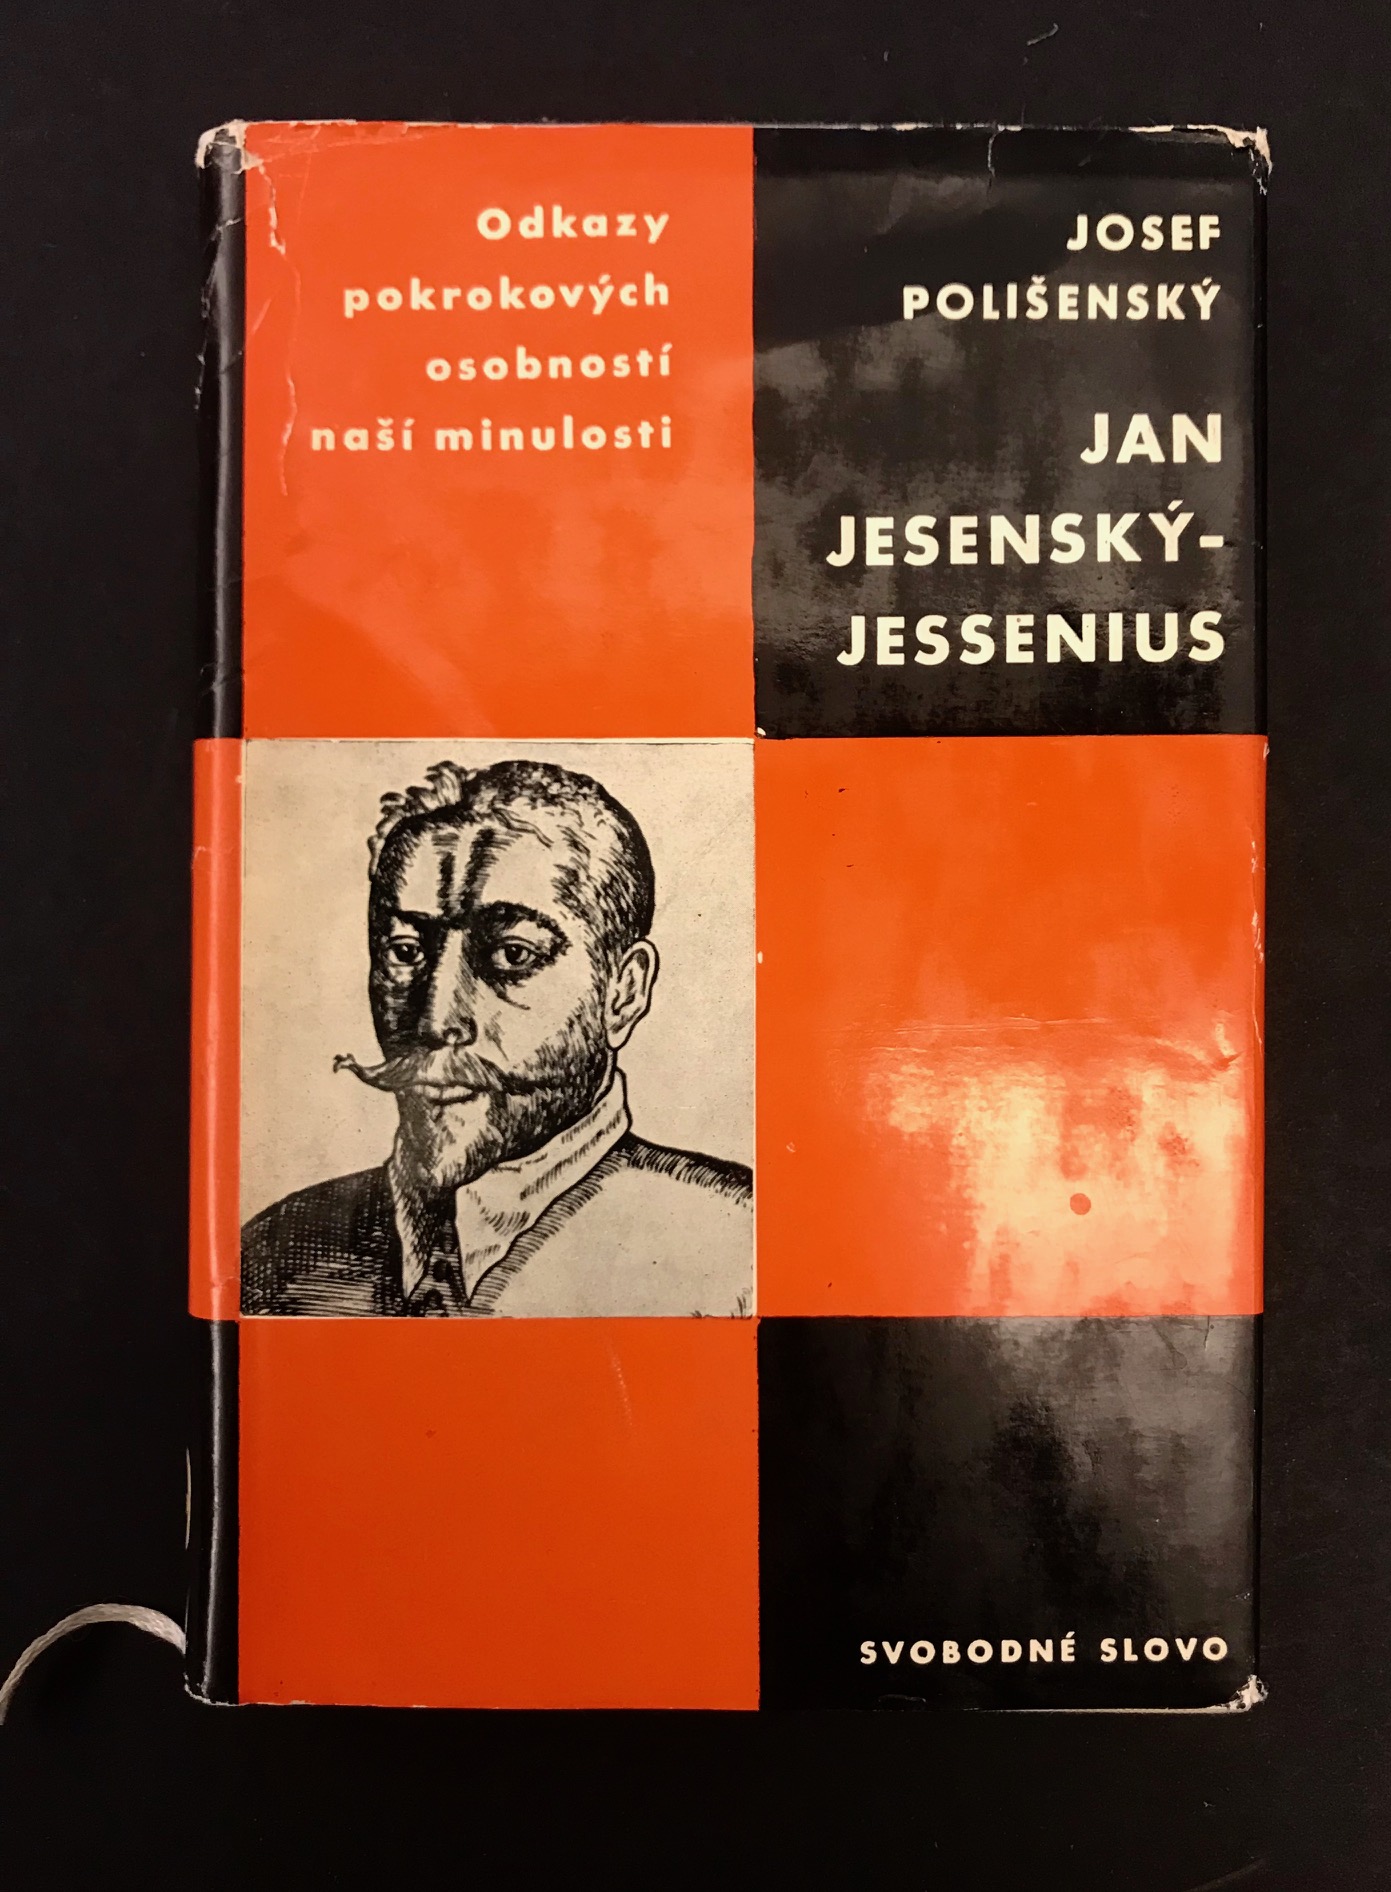 Jan Jesenský - Jessenius. Štúdia s ukážkami diela.